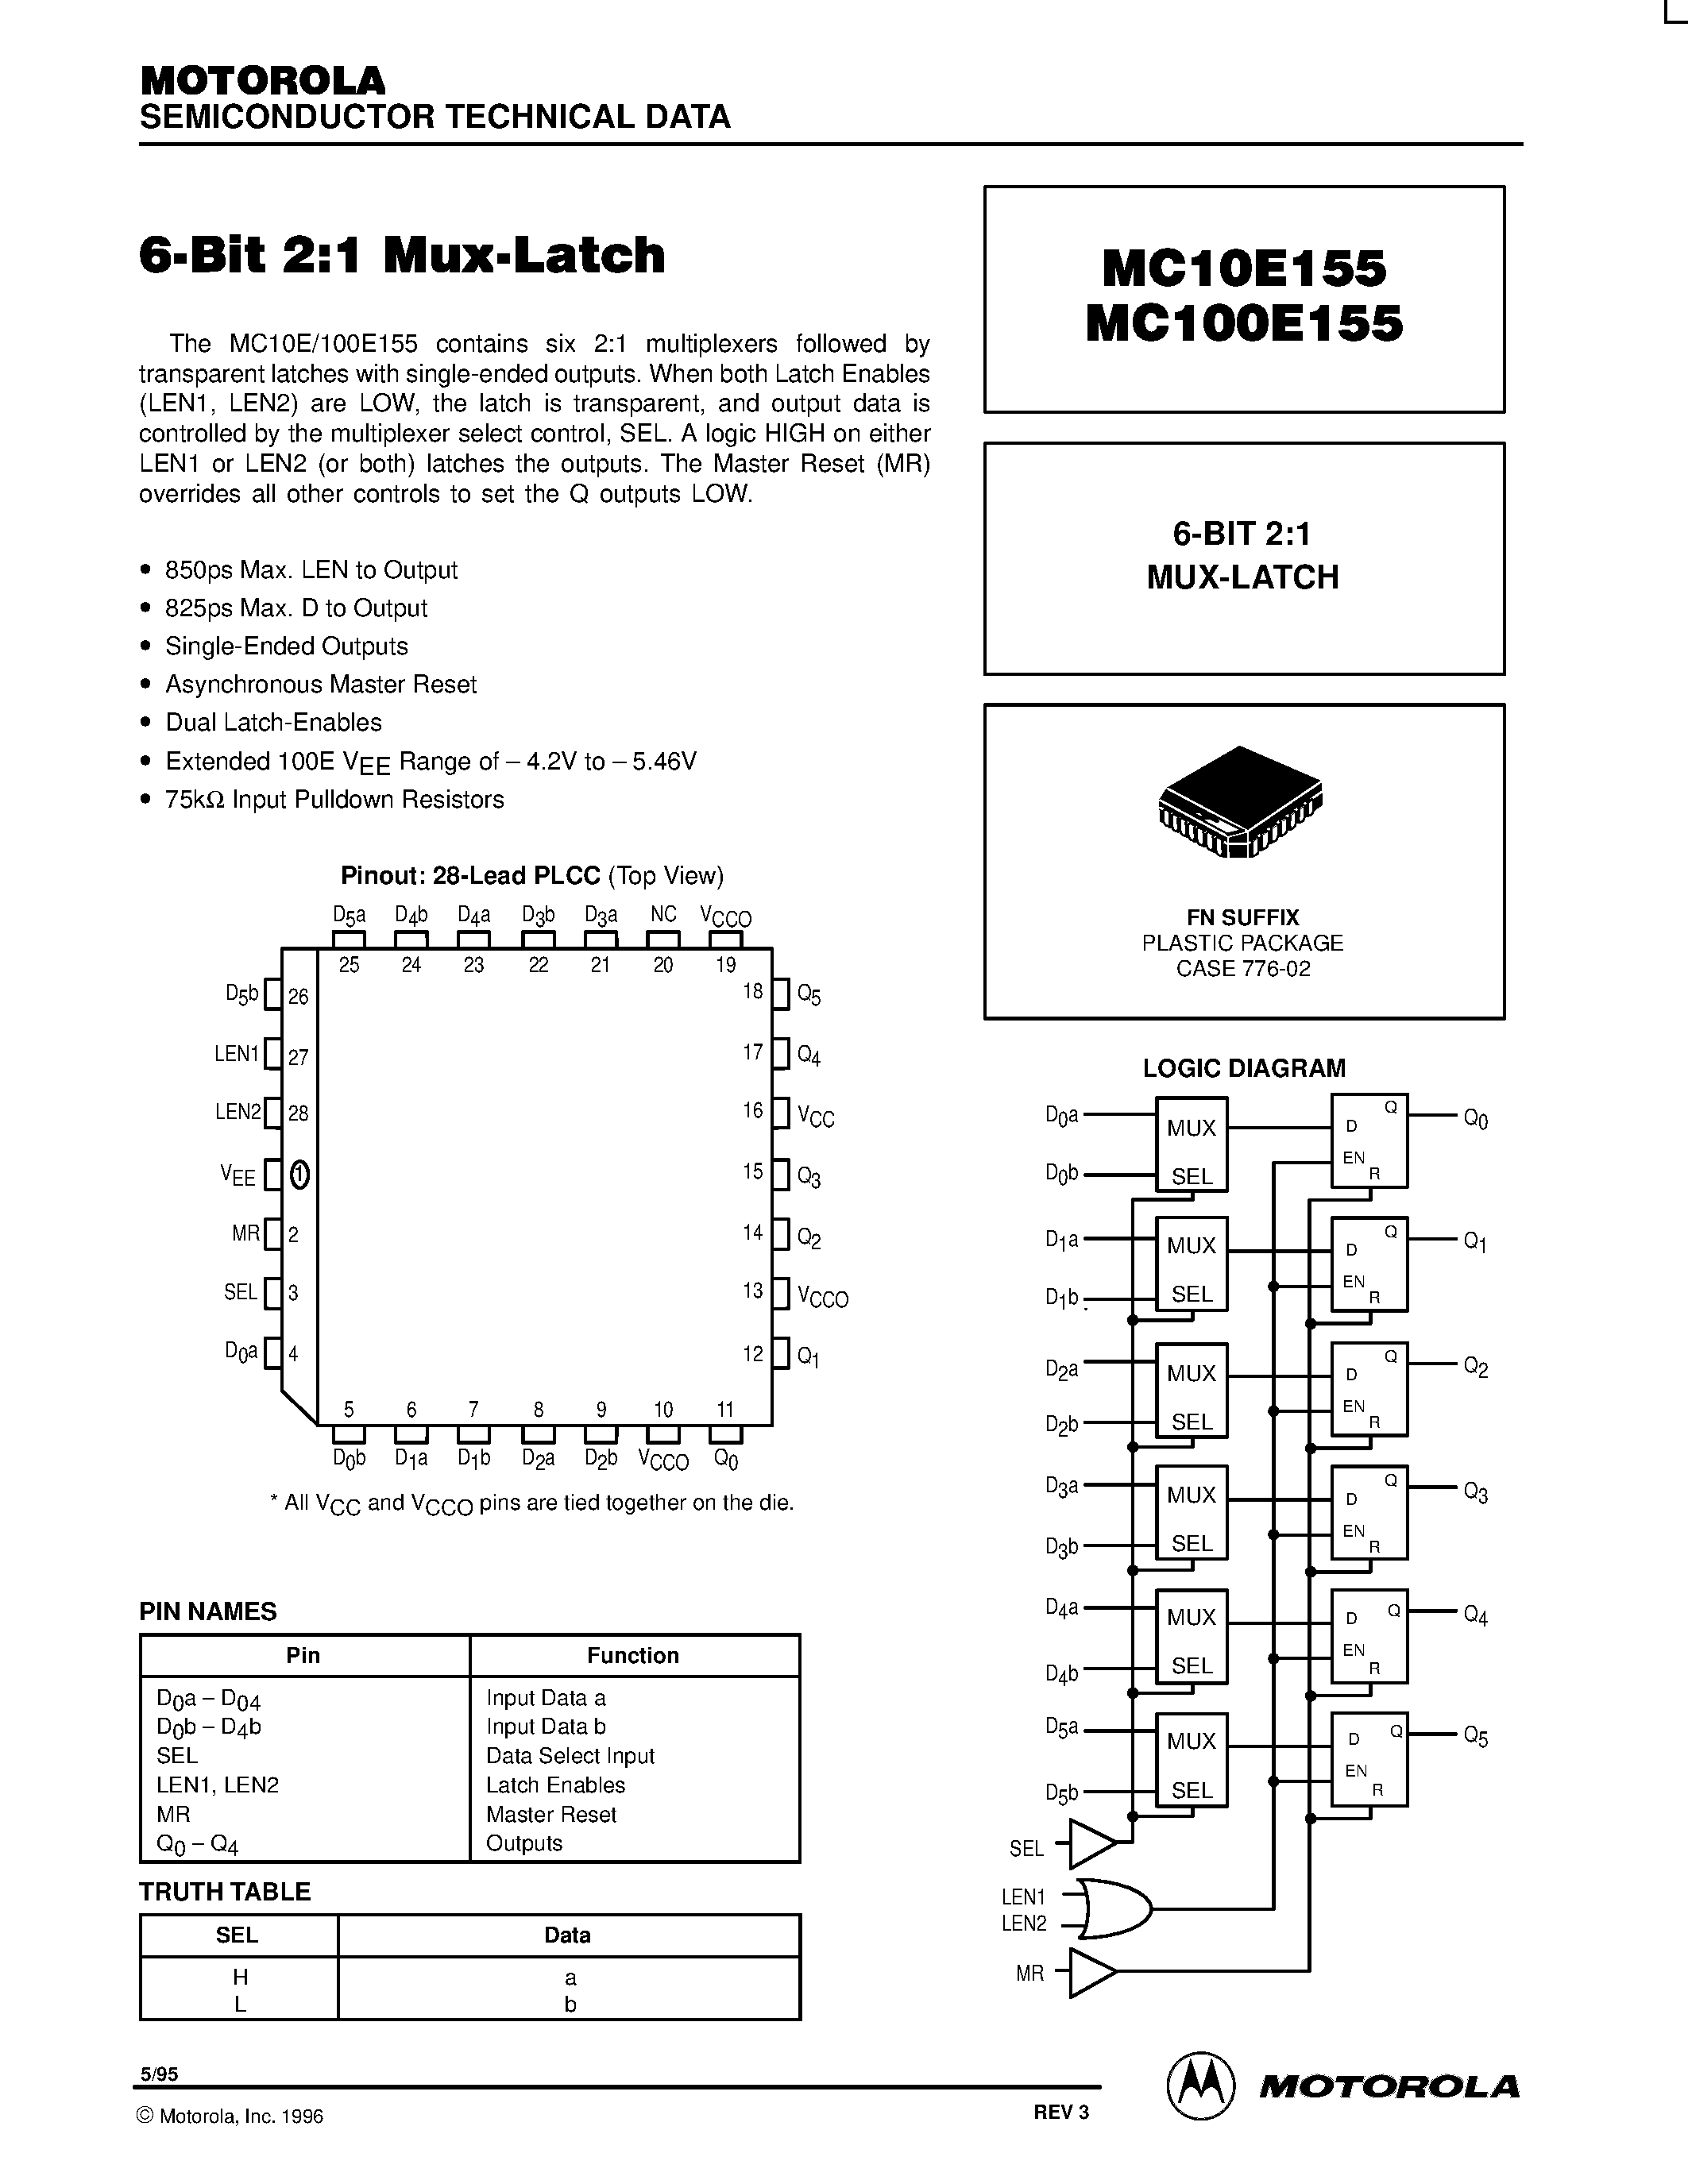 Datasheet MC100E155 - 6-BIT 2:1 MUX-LATCH page 1